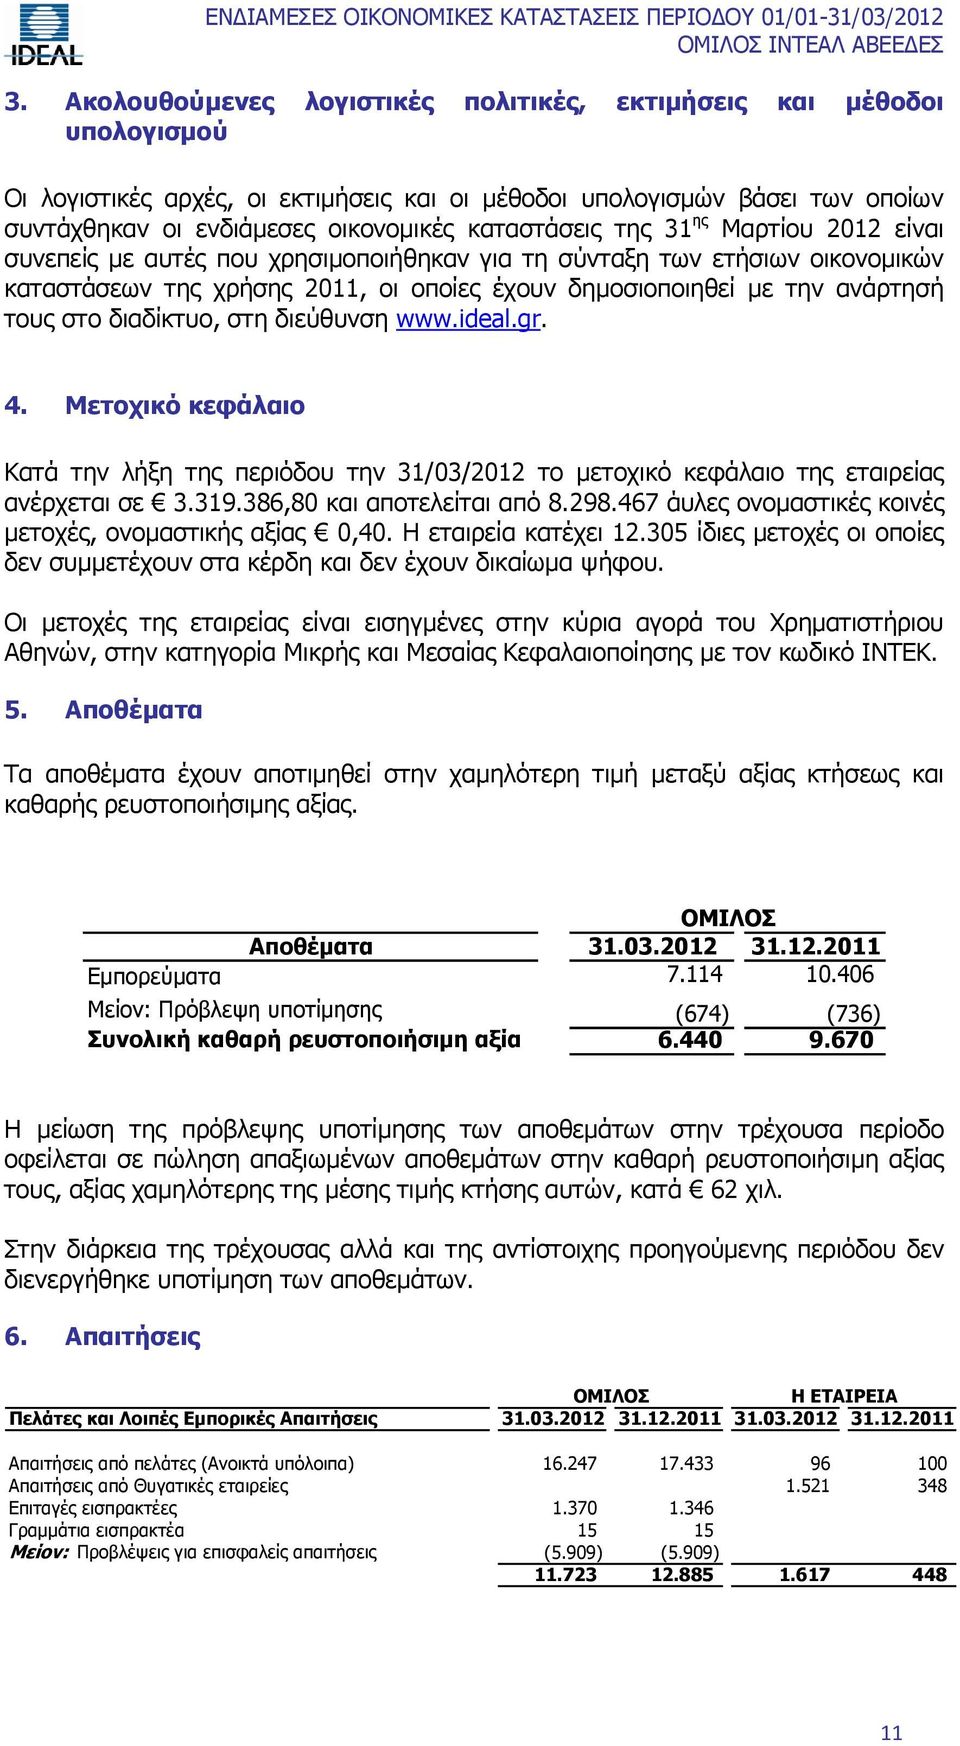 στο διαδίκτυο, στη διεύθυνση www.ideal.gr. 4. Μετοχικό κεφάλαιο Κατά την λήξη της περιόδου την 31/03/2012 το μετοχικό κεφάλαιο της εταιρείας ανέρχεται σε 3.319.386,80 και αποτελείται από 8.298.